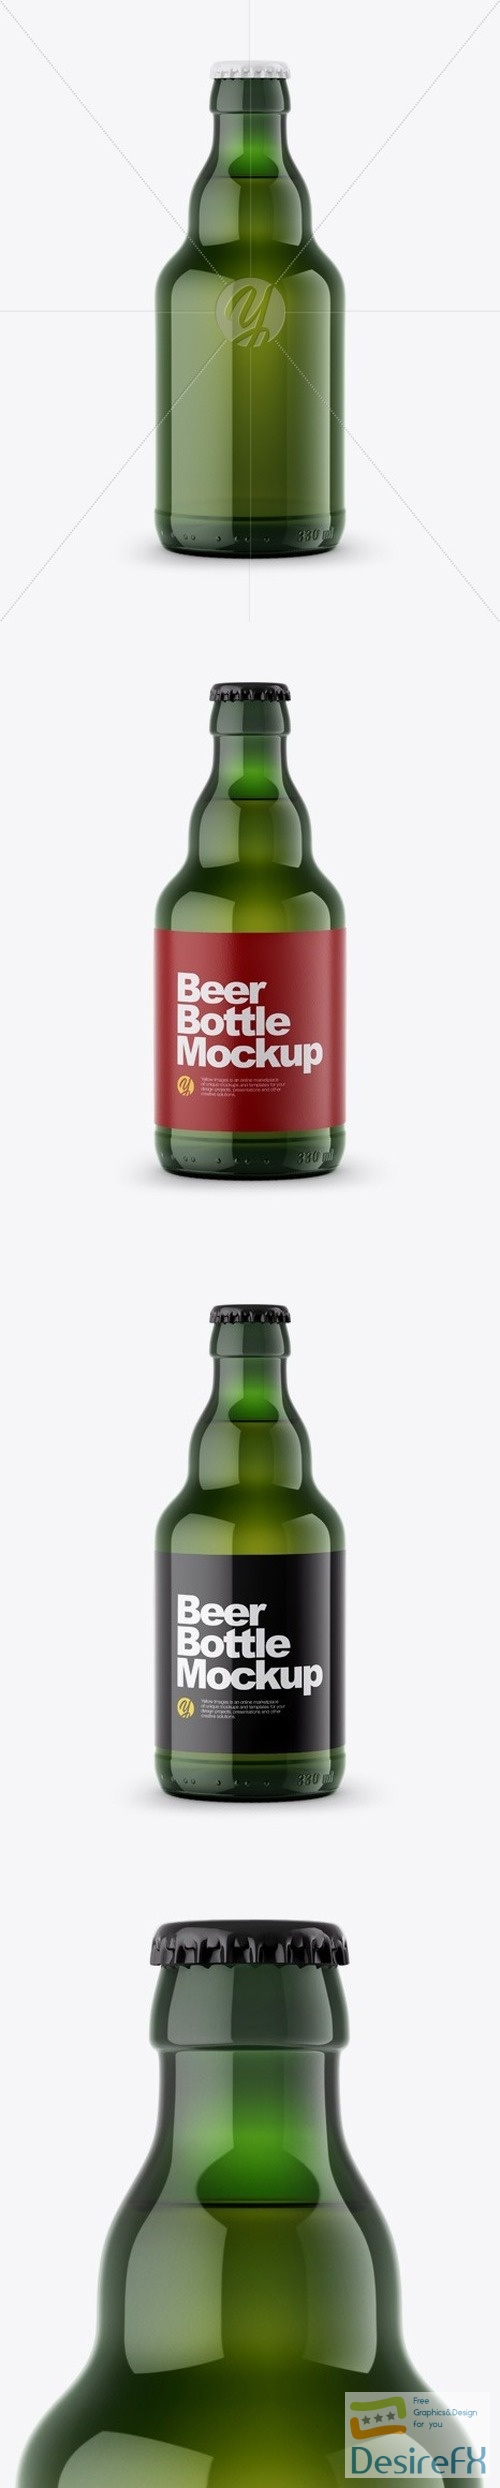 Green Beer Bottle Mockup 48826